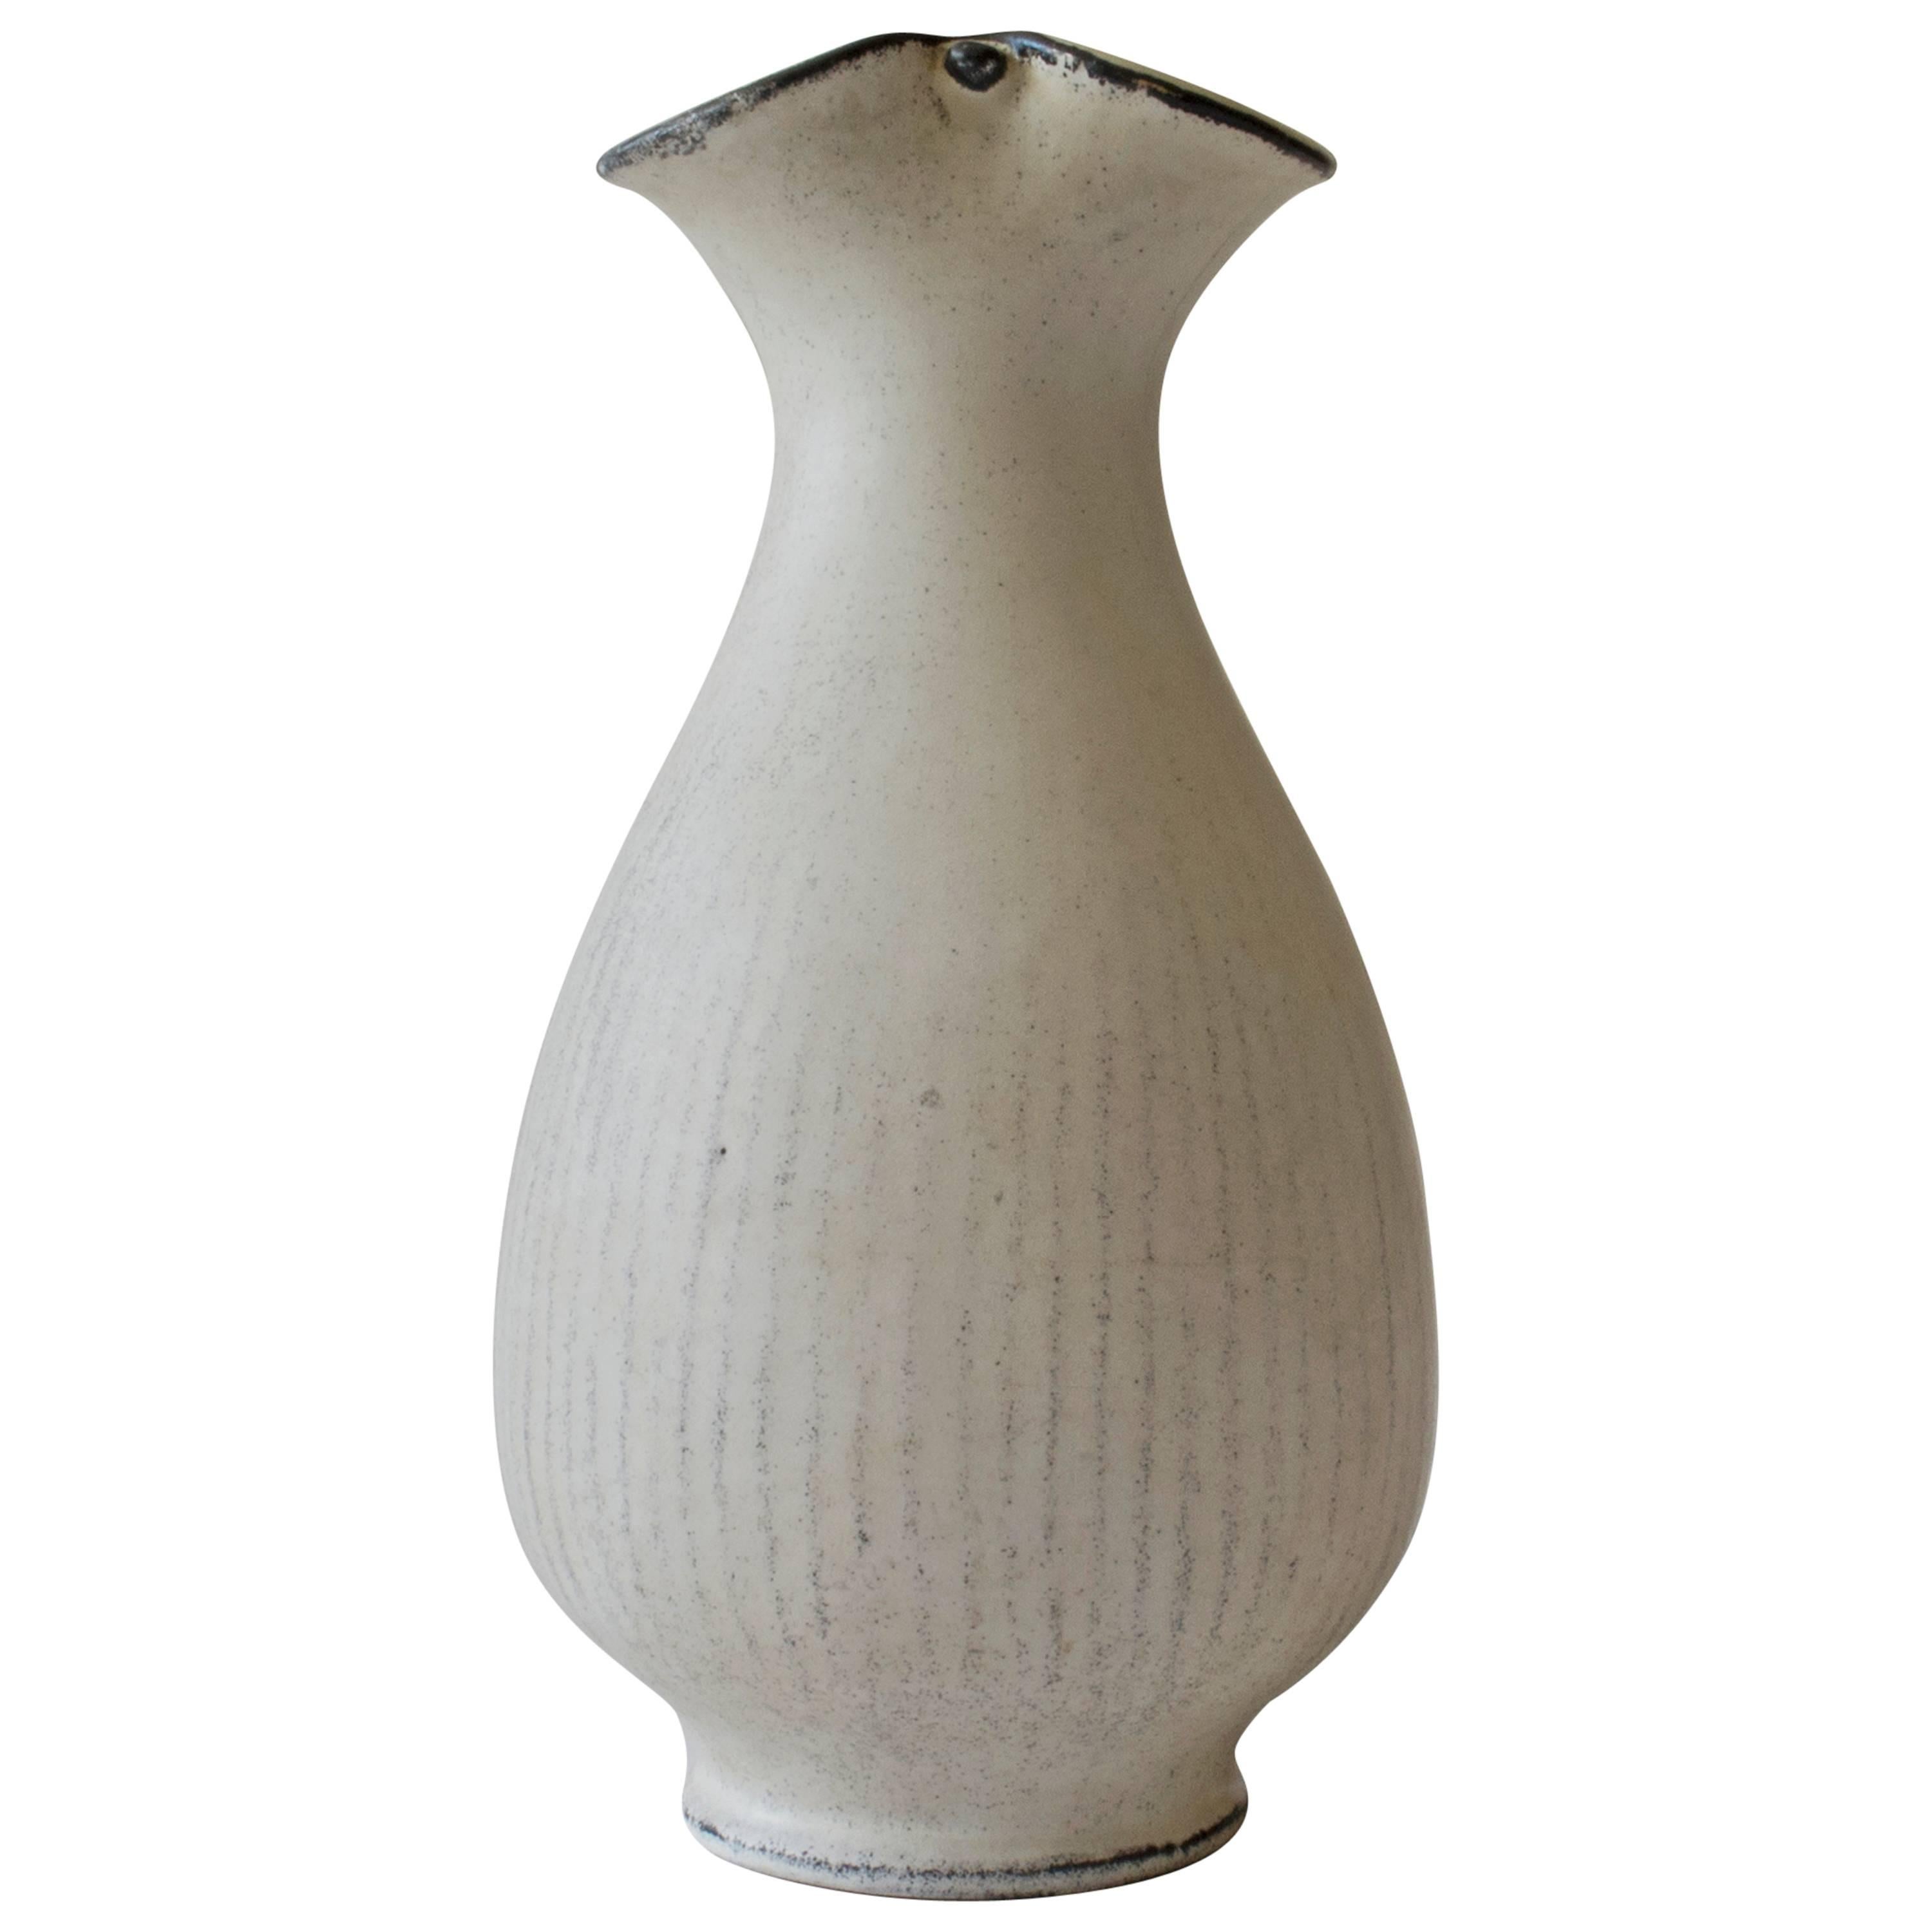 Svend Hammershøi for Kähler, Rare Three-Lobed Black & White Glazed Ceramic Vase